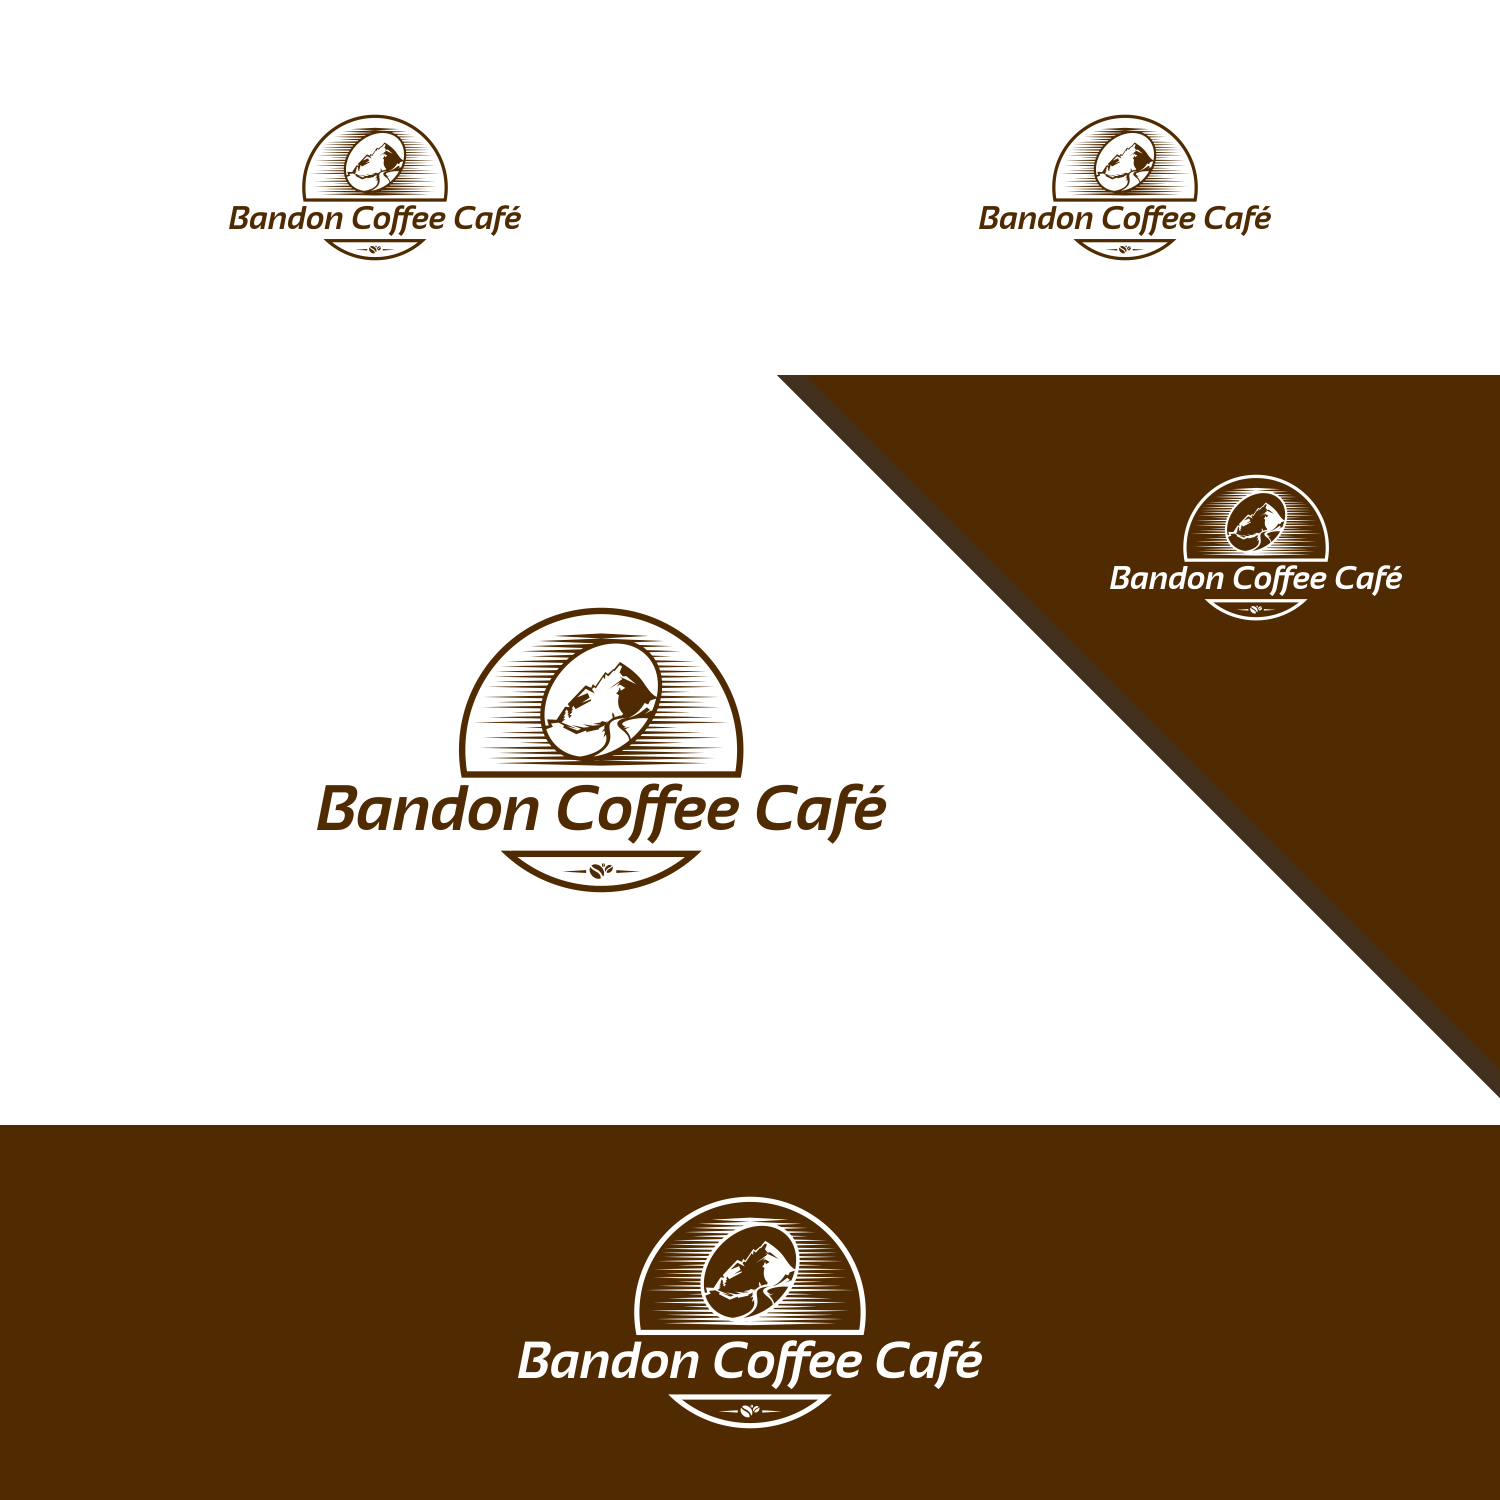 Bandon Logo - Bold, Conservative, Coffee Shop Logo Design for Bandon Coffee Cafe